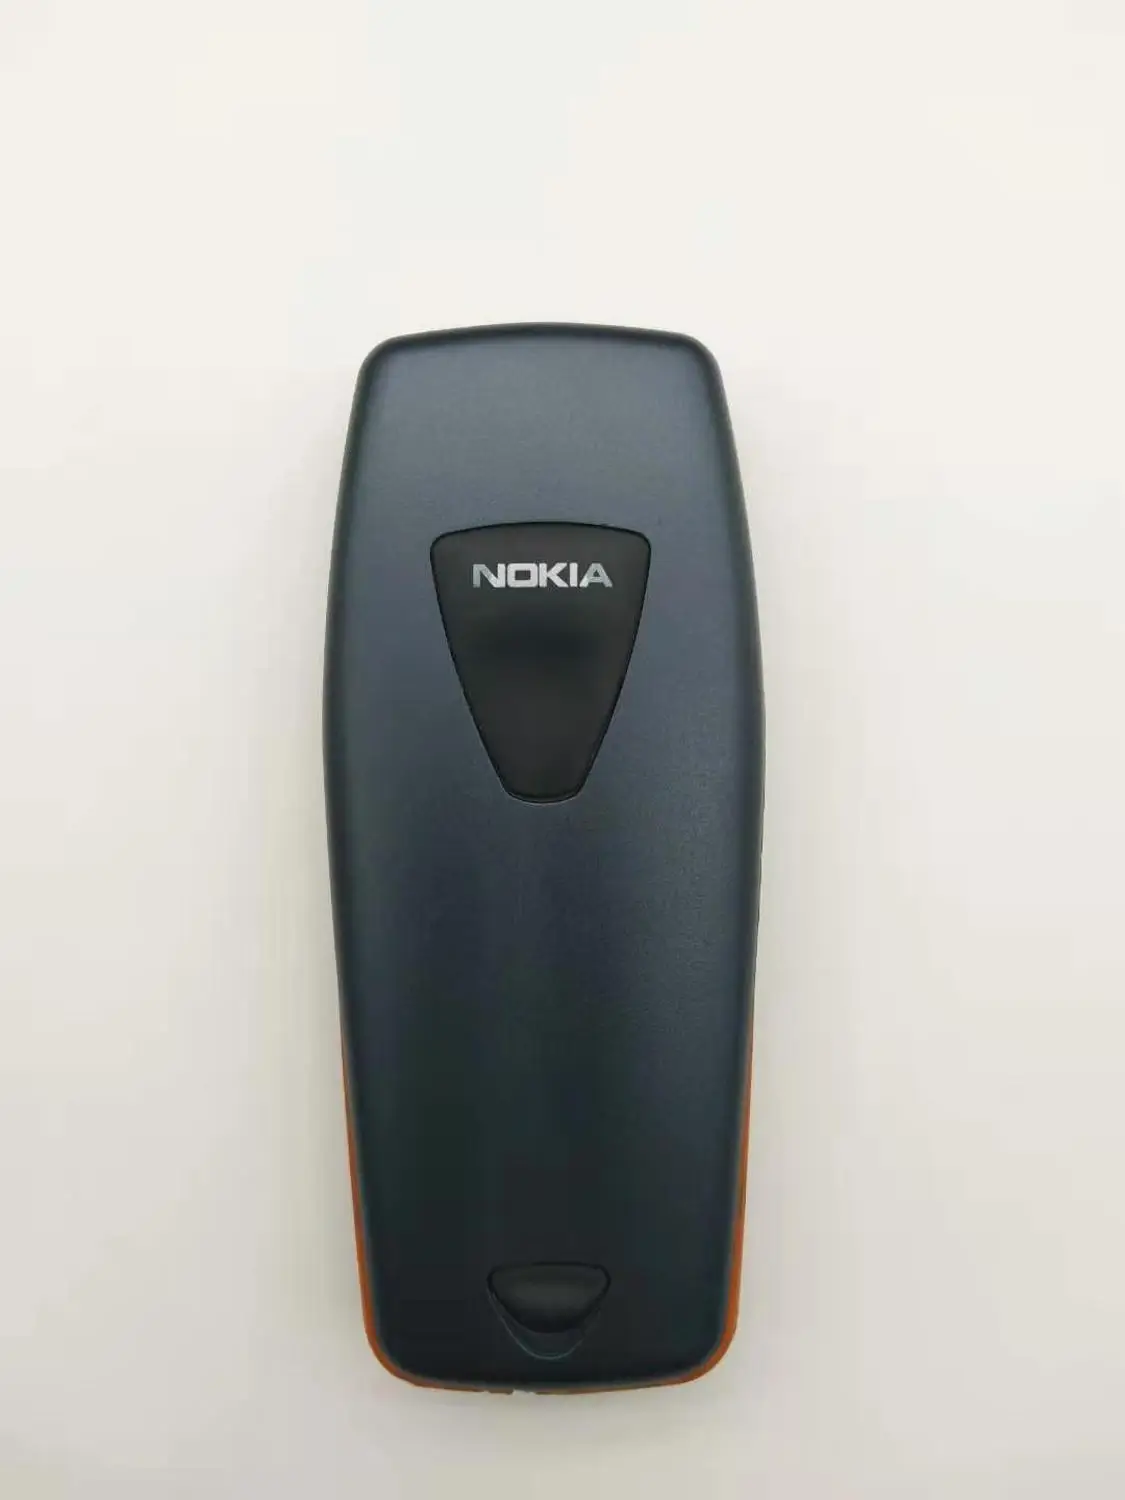 Восстановленный Nokia 3510 3510i дешевый подарок телефон 2G GSM Dualband классический мобильный телефон русская клавиатура Восстановленный